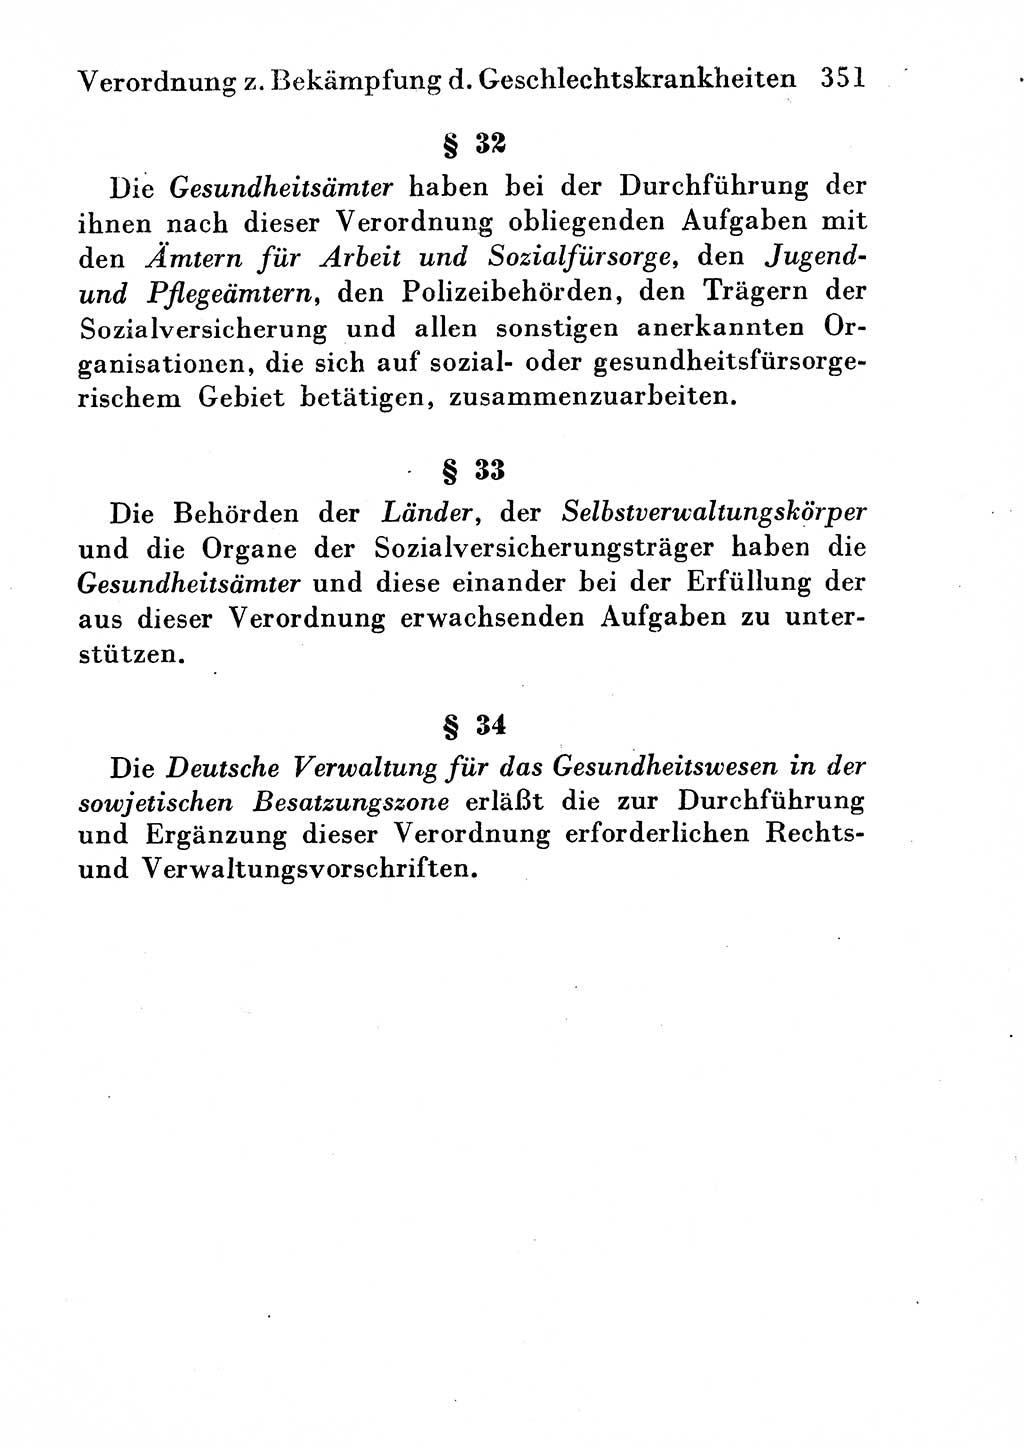 Strafgesetzbuch (StGB) und andere Strafgesetze [Deutsche Demokratische Republik (DDR)] 1954, Seite 351 (StGB Strafges. DDR 1954, S. 351)